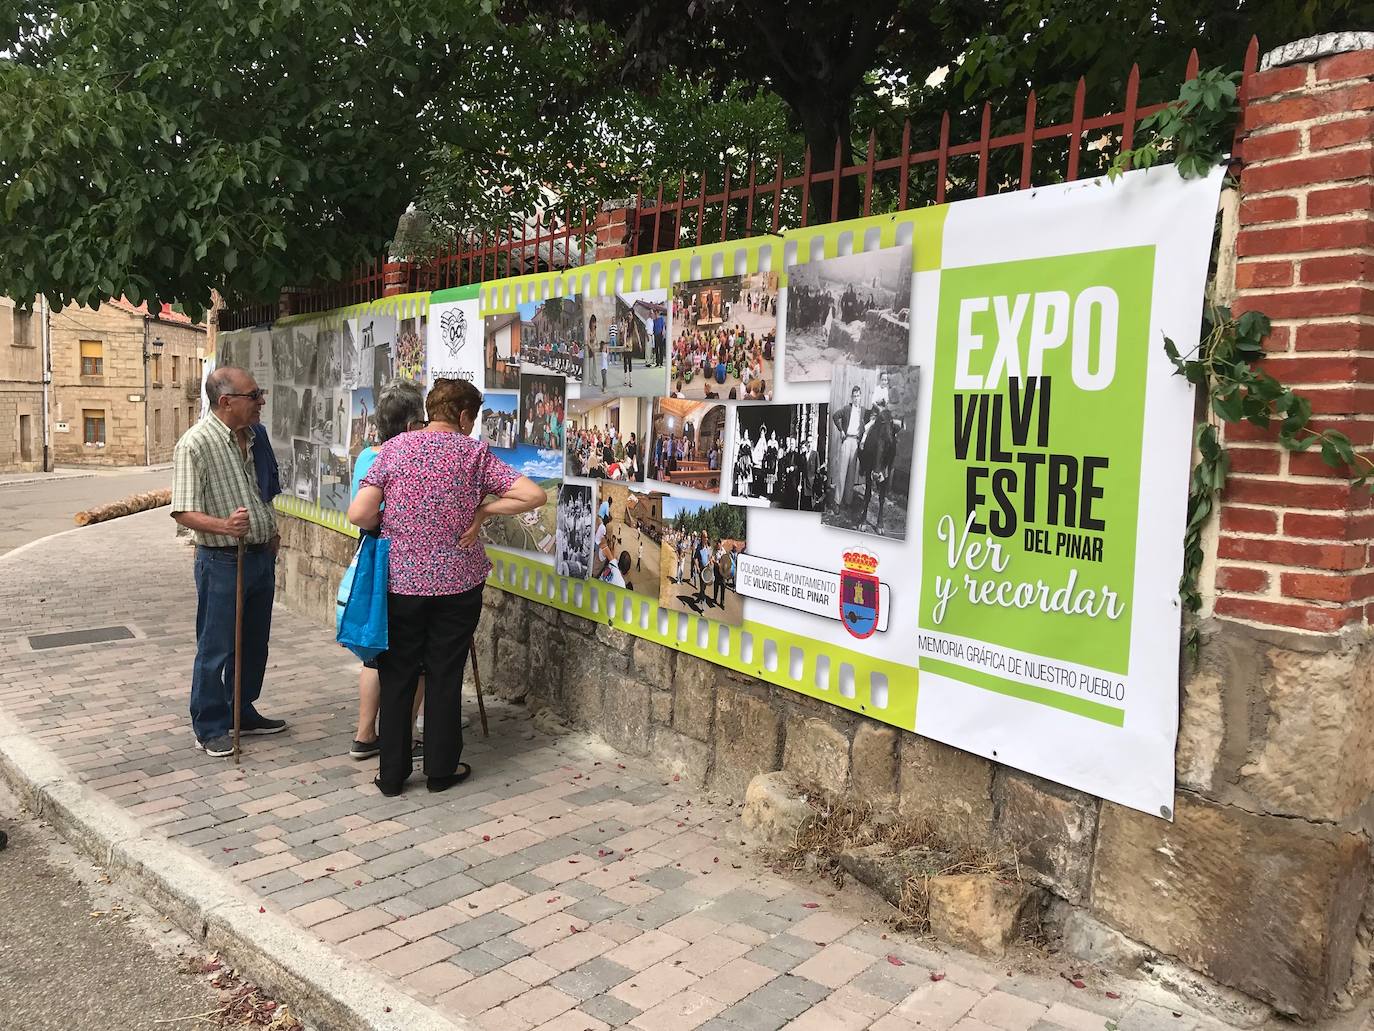 La Expo Fotográfica Vilviestre, 'Ver y recordar' contiene más de 300 fotografías con 180 metros de pancartas repartidas por toda la localidad